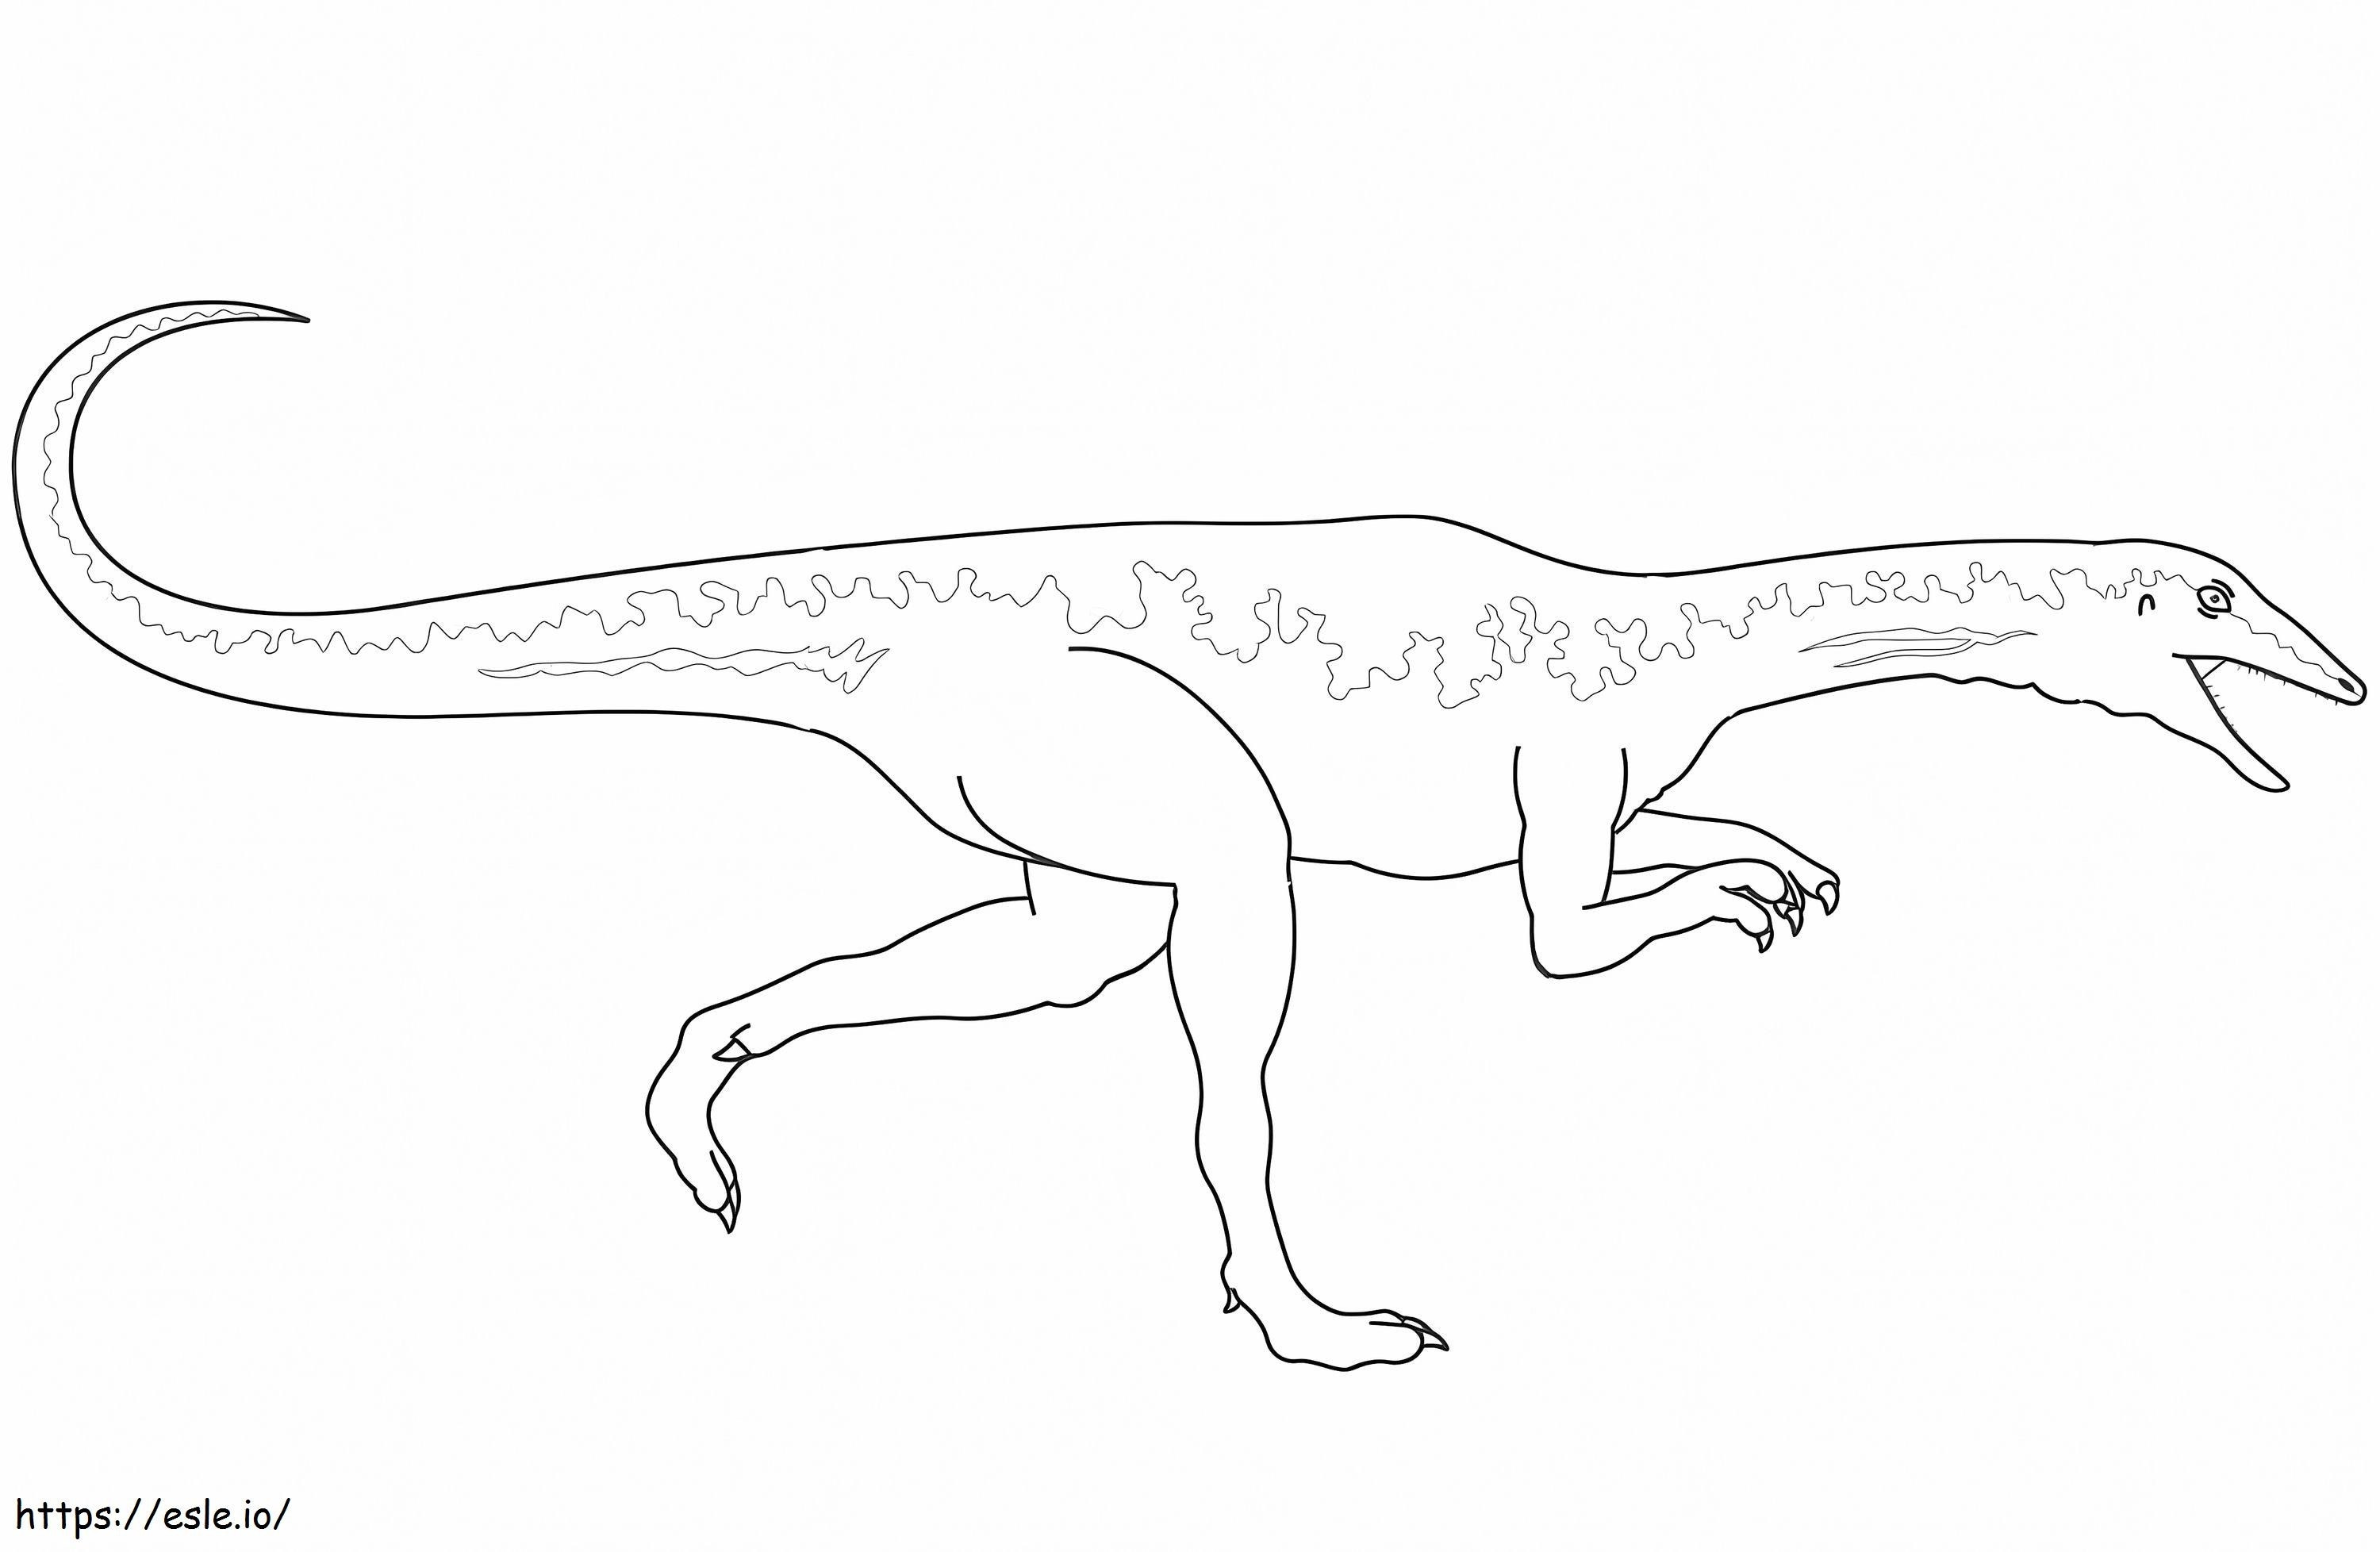 Dinosauro Velociraptor da colorare